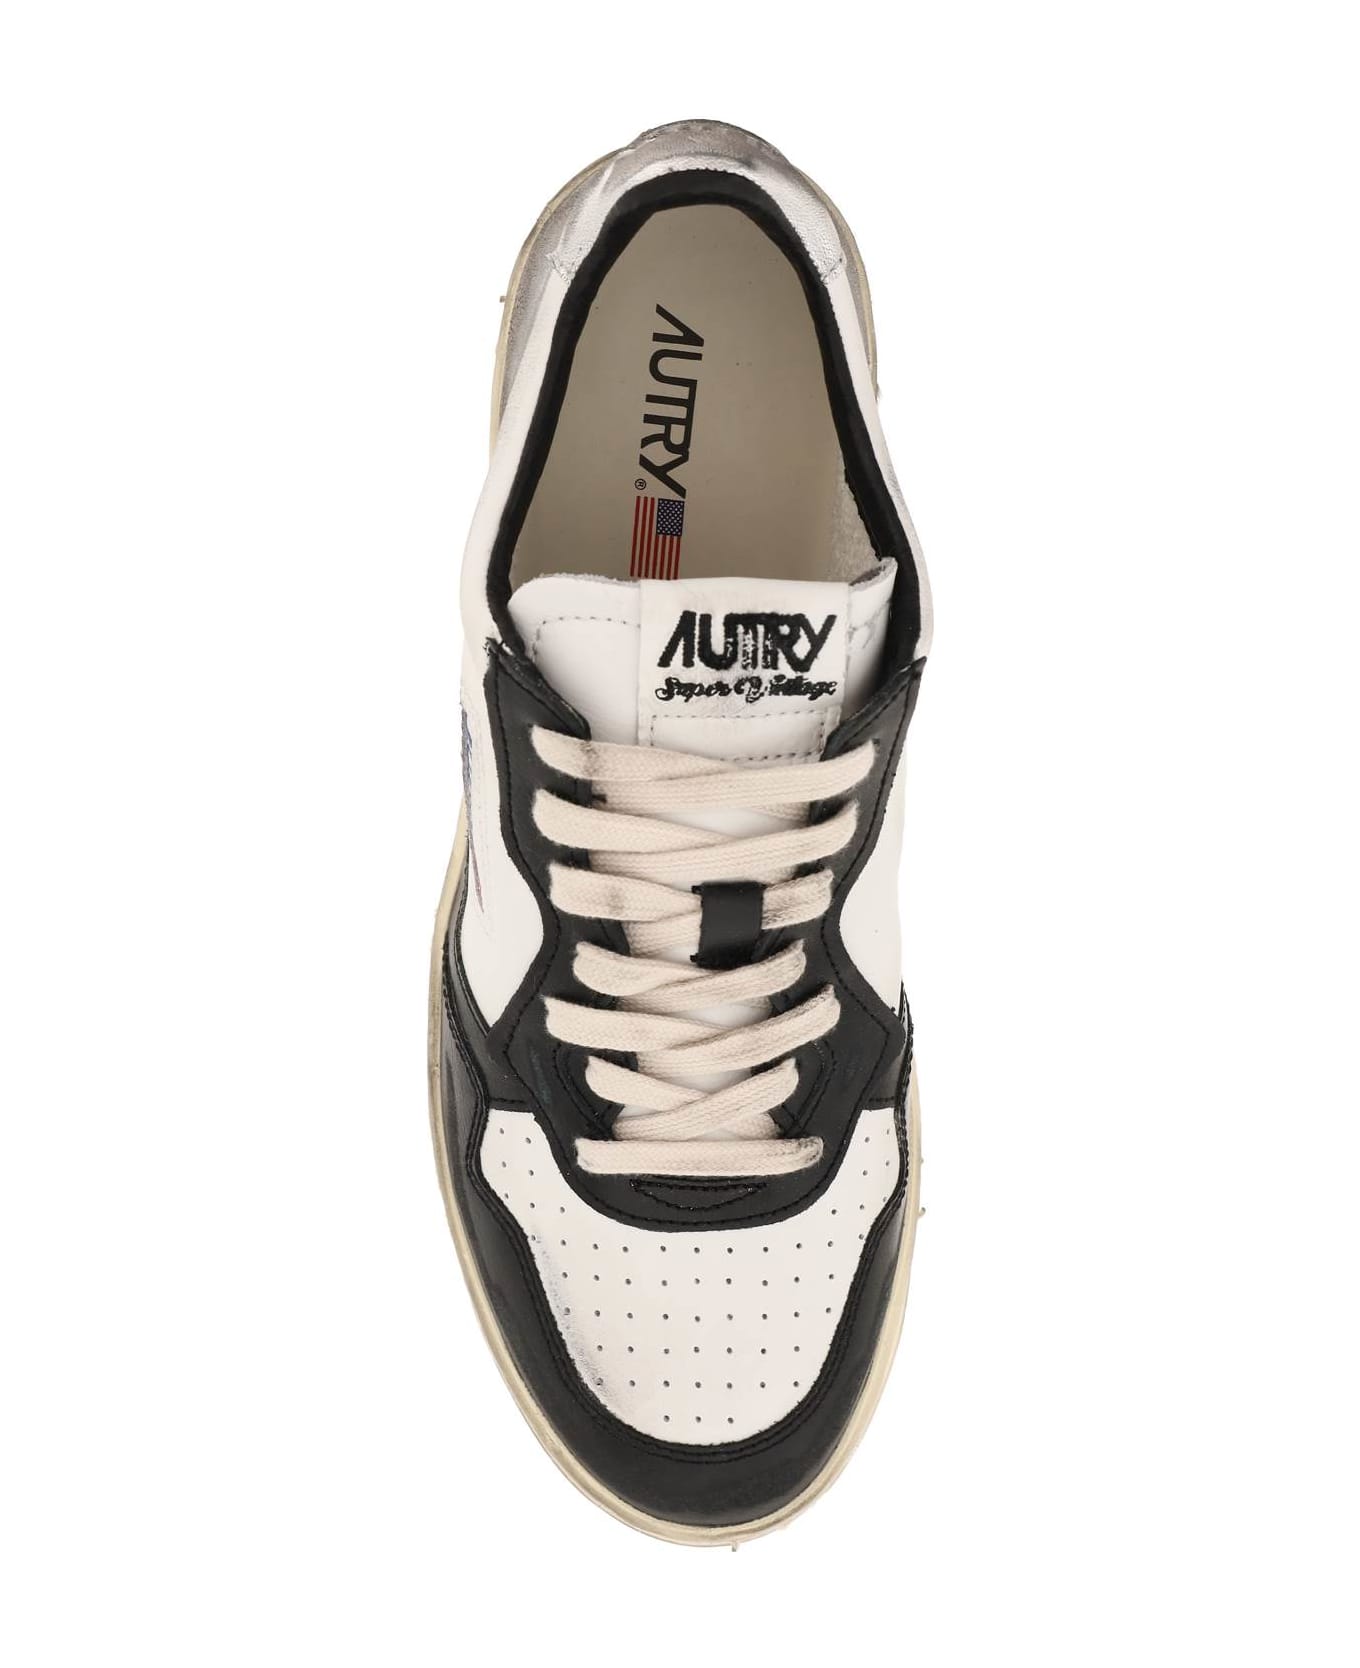 Autry Super Vintage Low Sneakers - Black